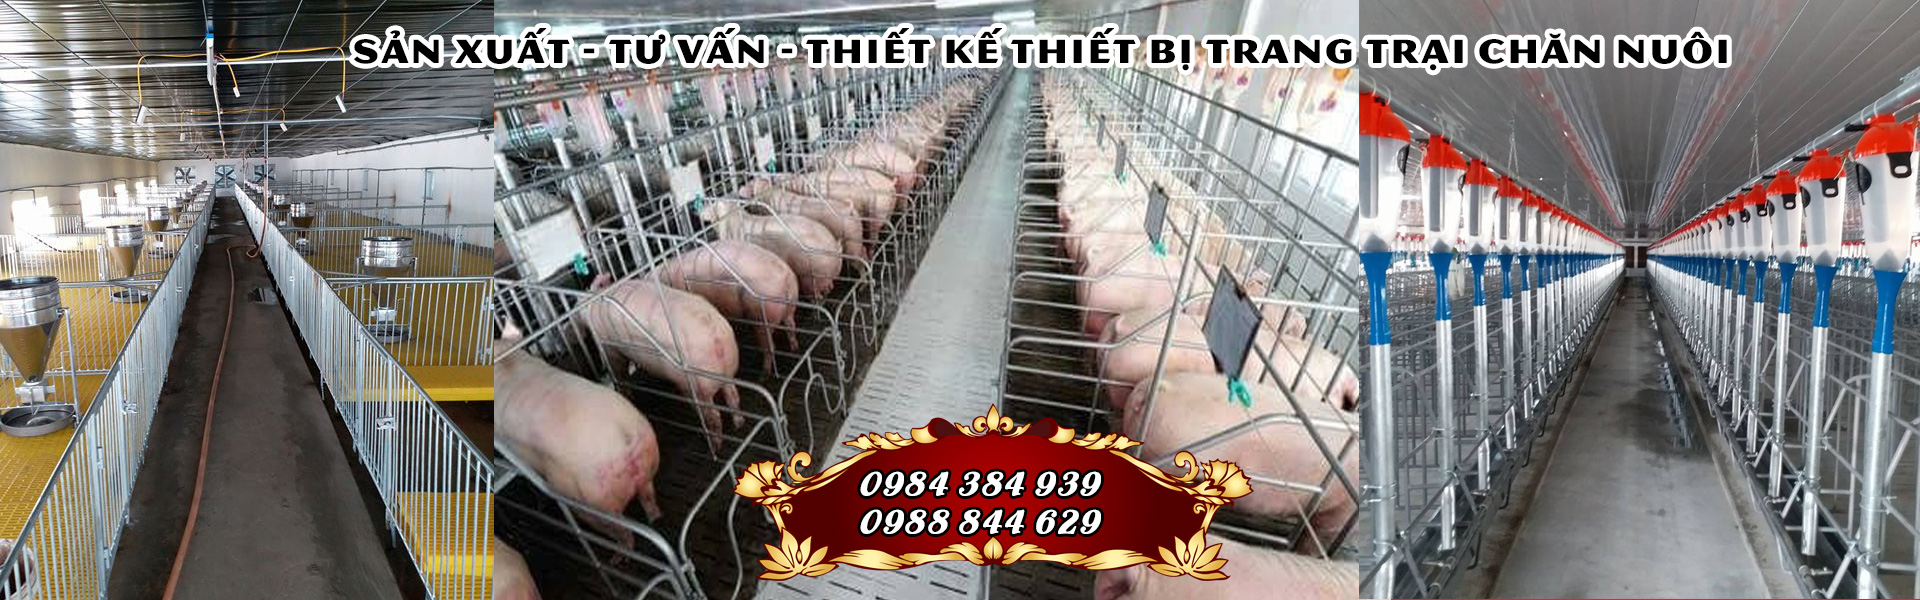 Thiết bị chăn nuôi hKiếm tiền tỷ nhờ thiết bị chăn nuôi heoeo tại Hà Tĩnh